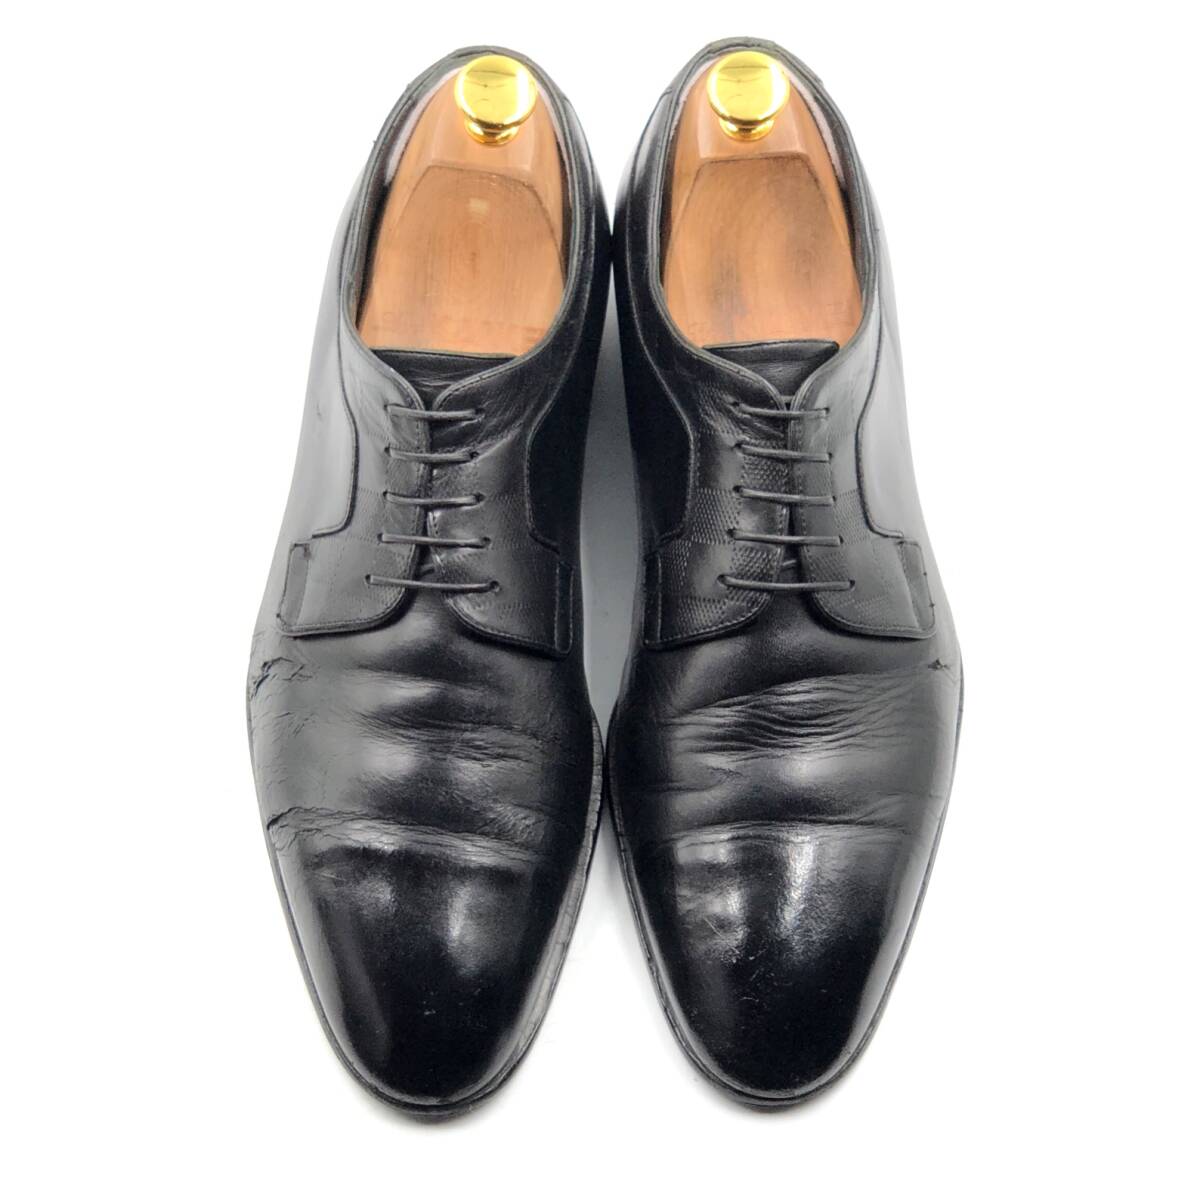 即決 Louis Vuitton ルイヴィトン 25.5cm 7.5 0188 メンズ レザーシューズ プレーントゥ 外羽根 黒 ブラック 革靴 皮靴 ビジネスシューズ_画像2